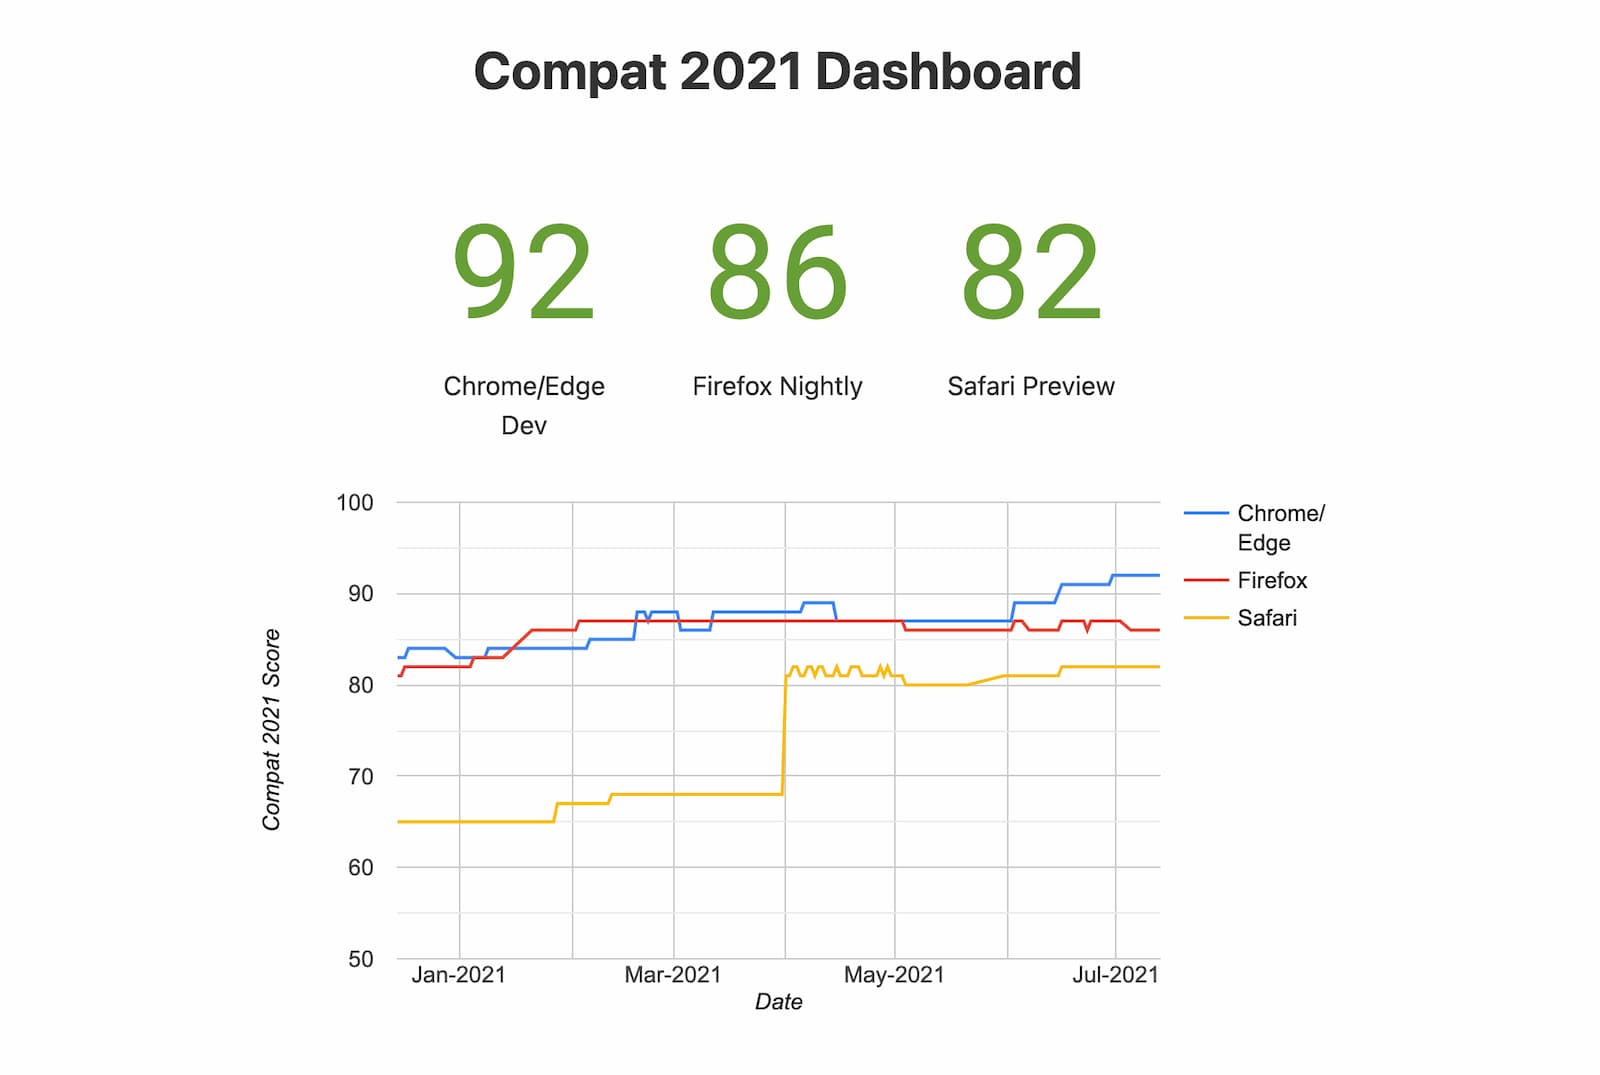 Bildtext: Ein Schnappschuss des Compat 2021 Dashboards (experimentelle Browser)